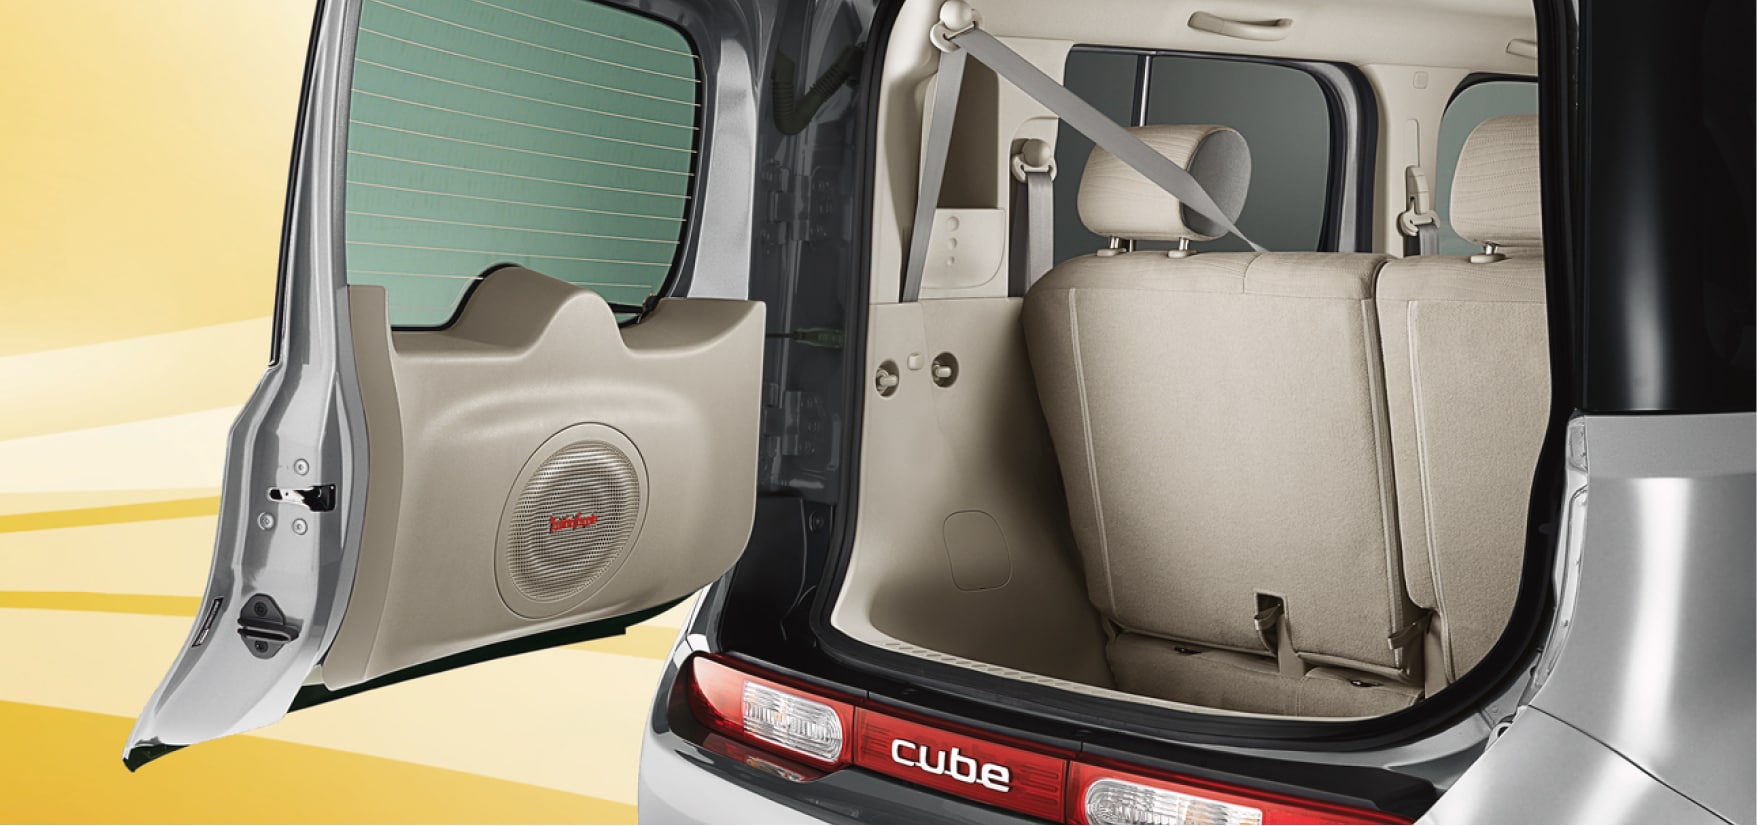 Nissan Cube back door open showing cargo space 